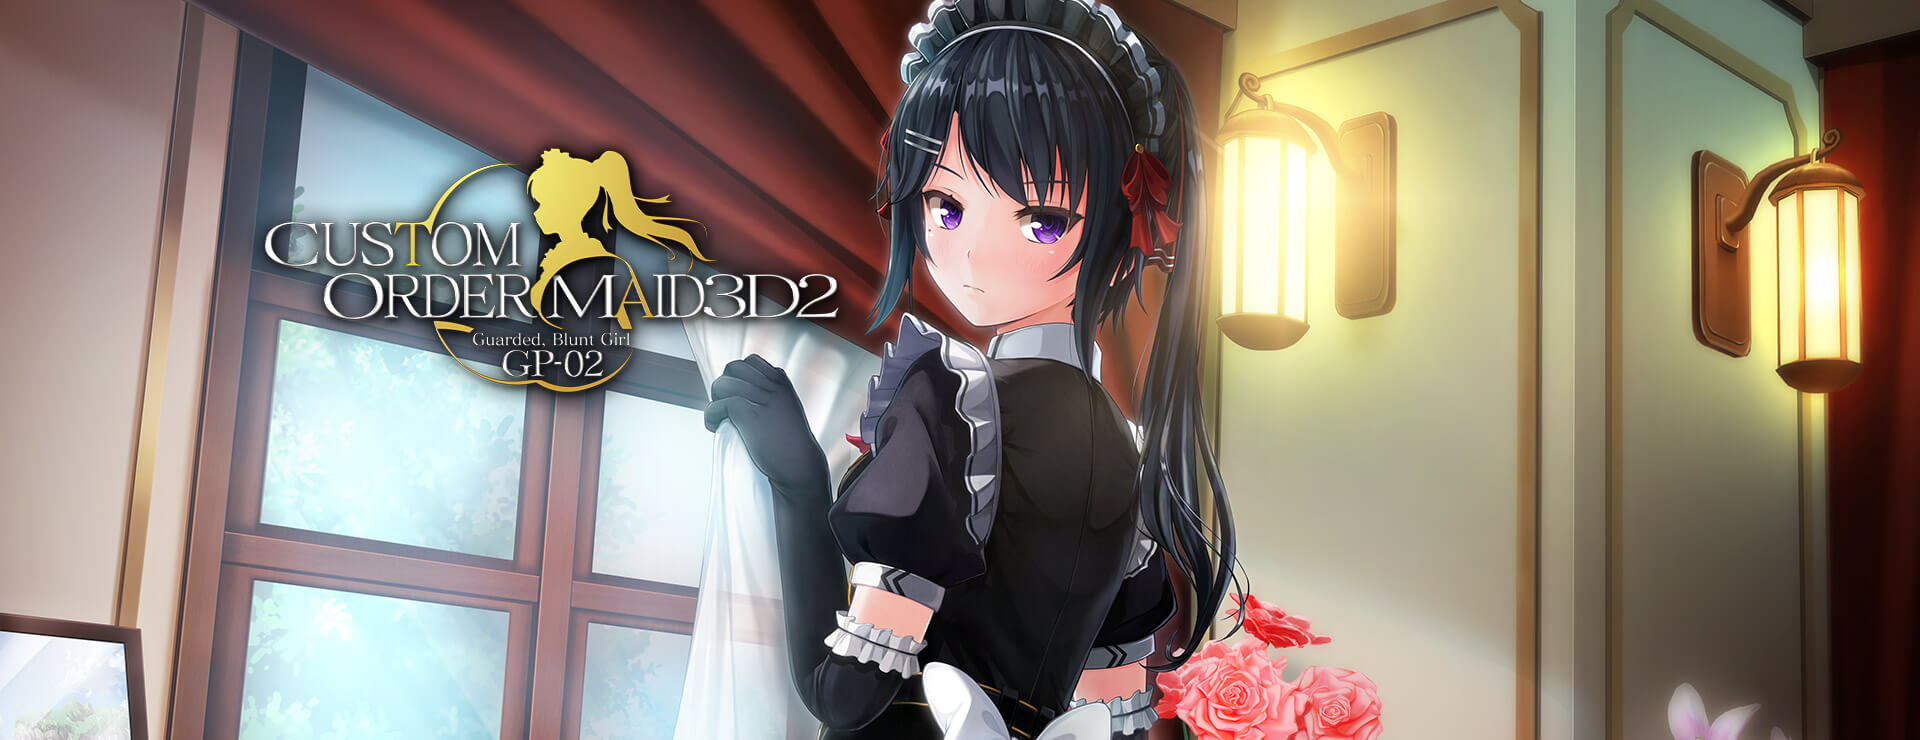 Custom Order Maid 3D2: Guarded, Blunt Girl GP02 DLC - Simulación Juego